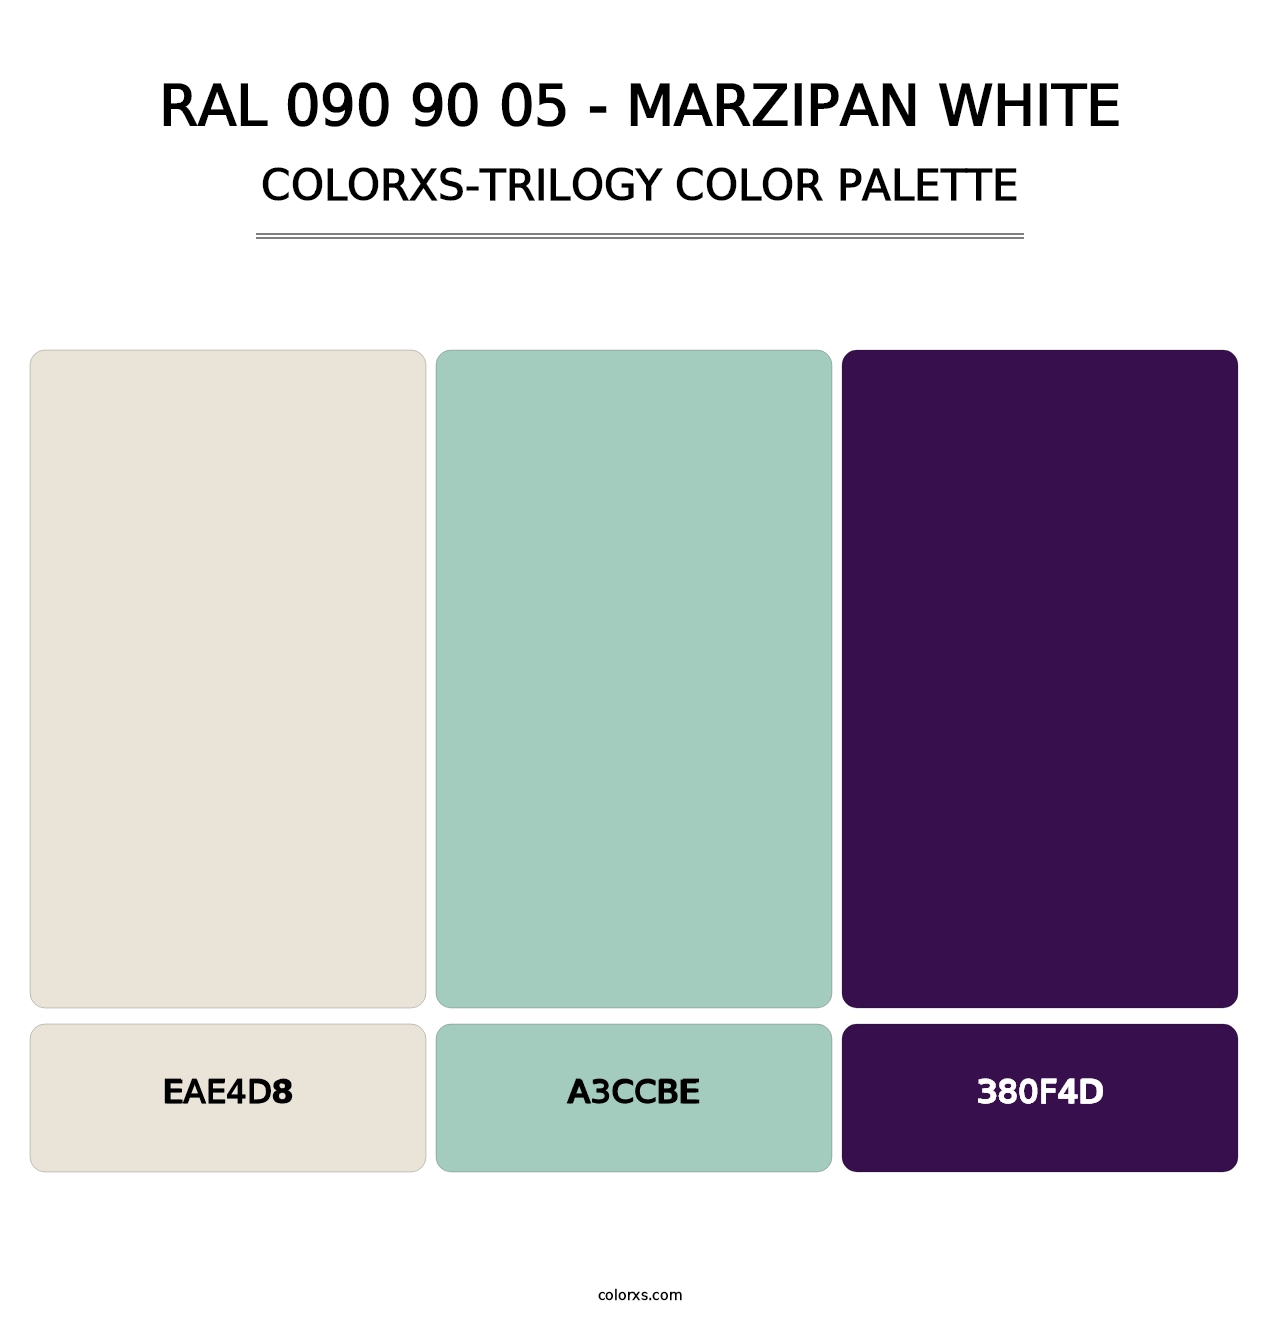 RAL 090 90 05 - Marzipan White - Colorxs Trilogy Palette